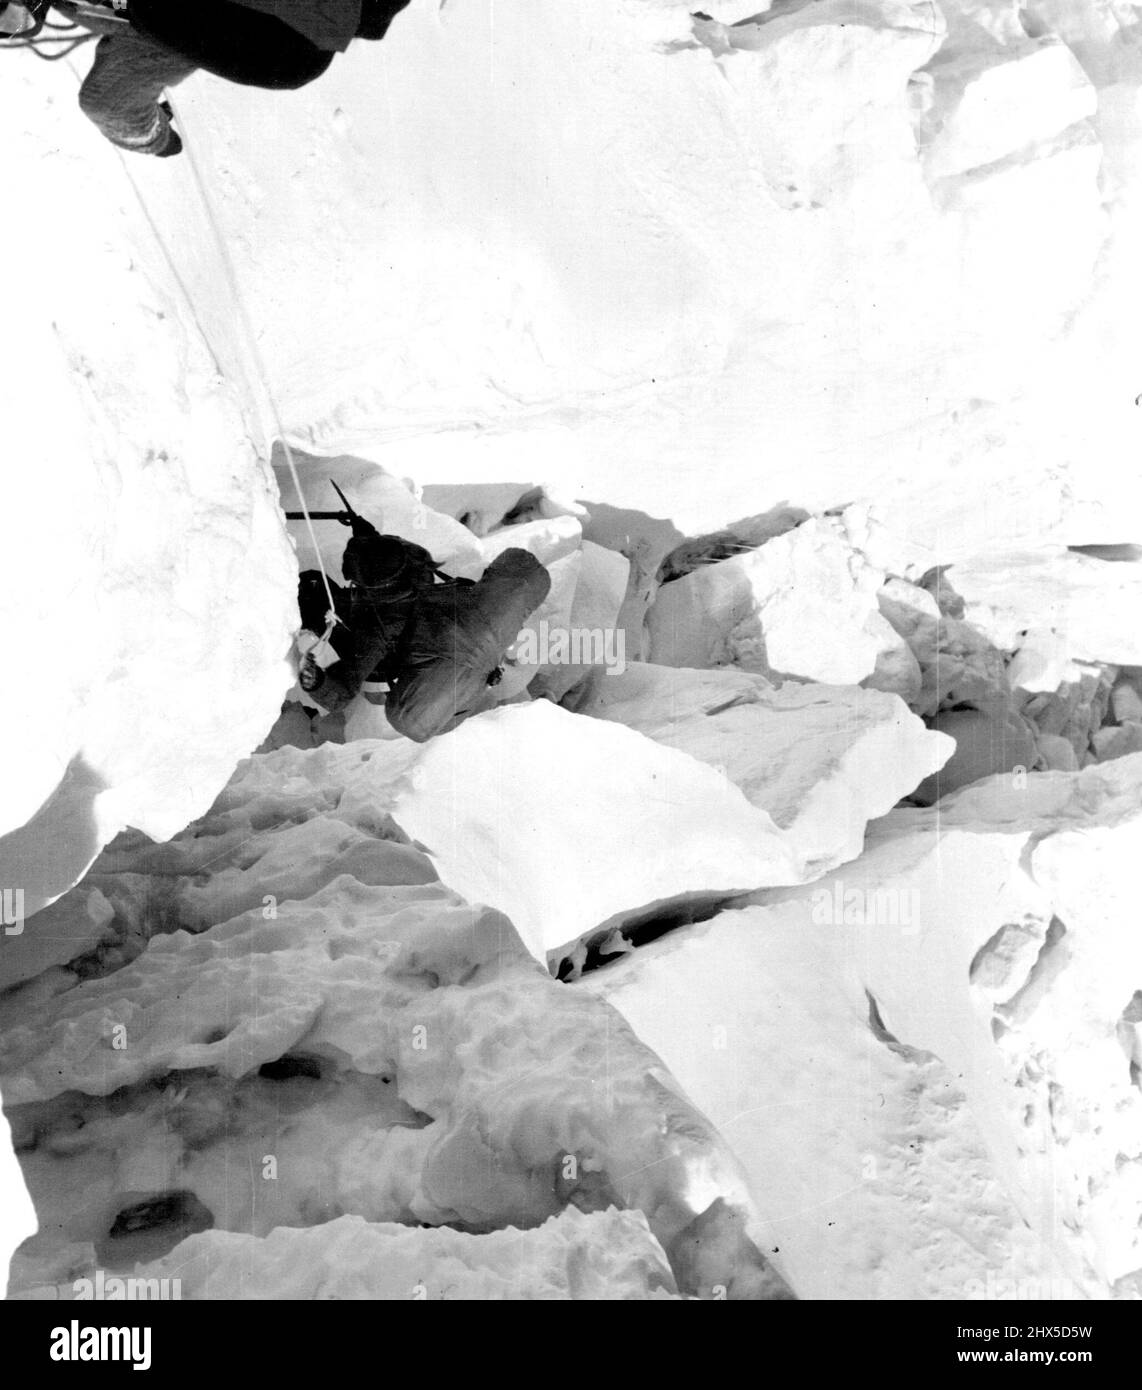 Expédition de l'Everest britannique 1953 -- bande et Hillary négociant une crevasse difficile sur Khumbu Icefall. Le camp II a été établi au milieu du Khumbu Icefall à une hauteur d'environ 19 500ft. 21 mai 1953. Banque D'Images